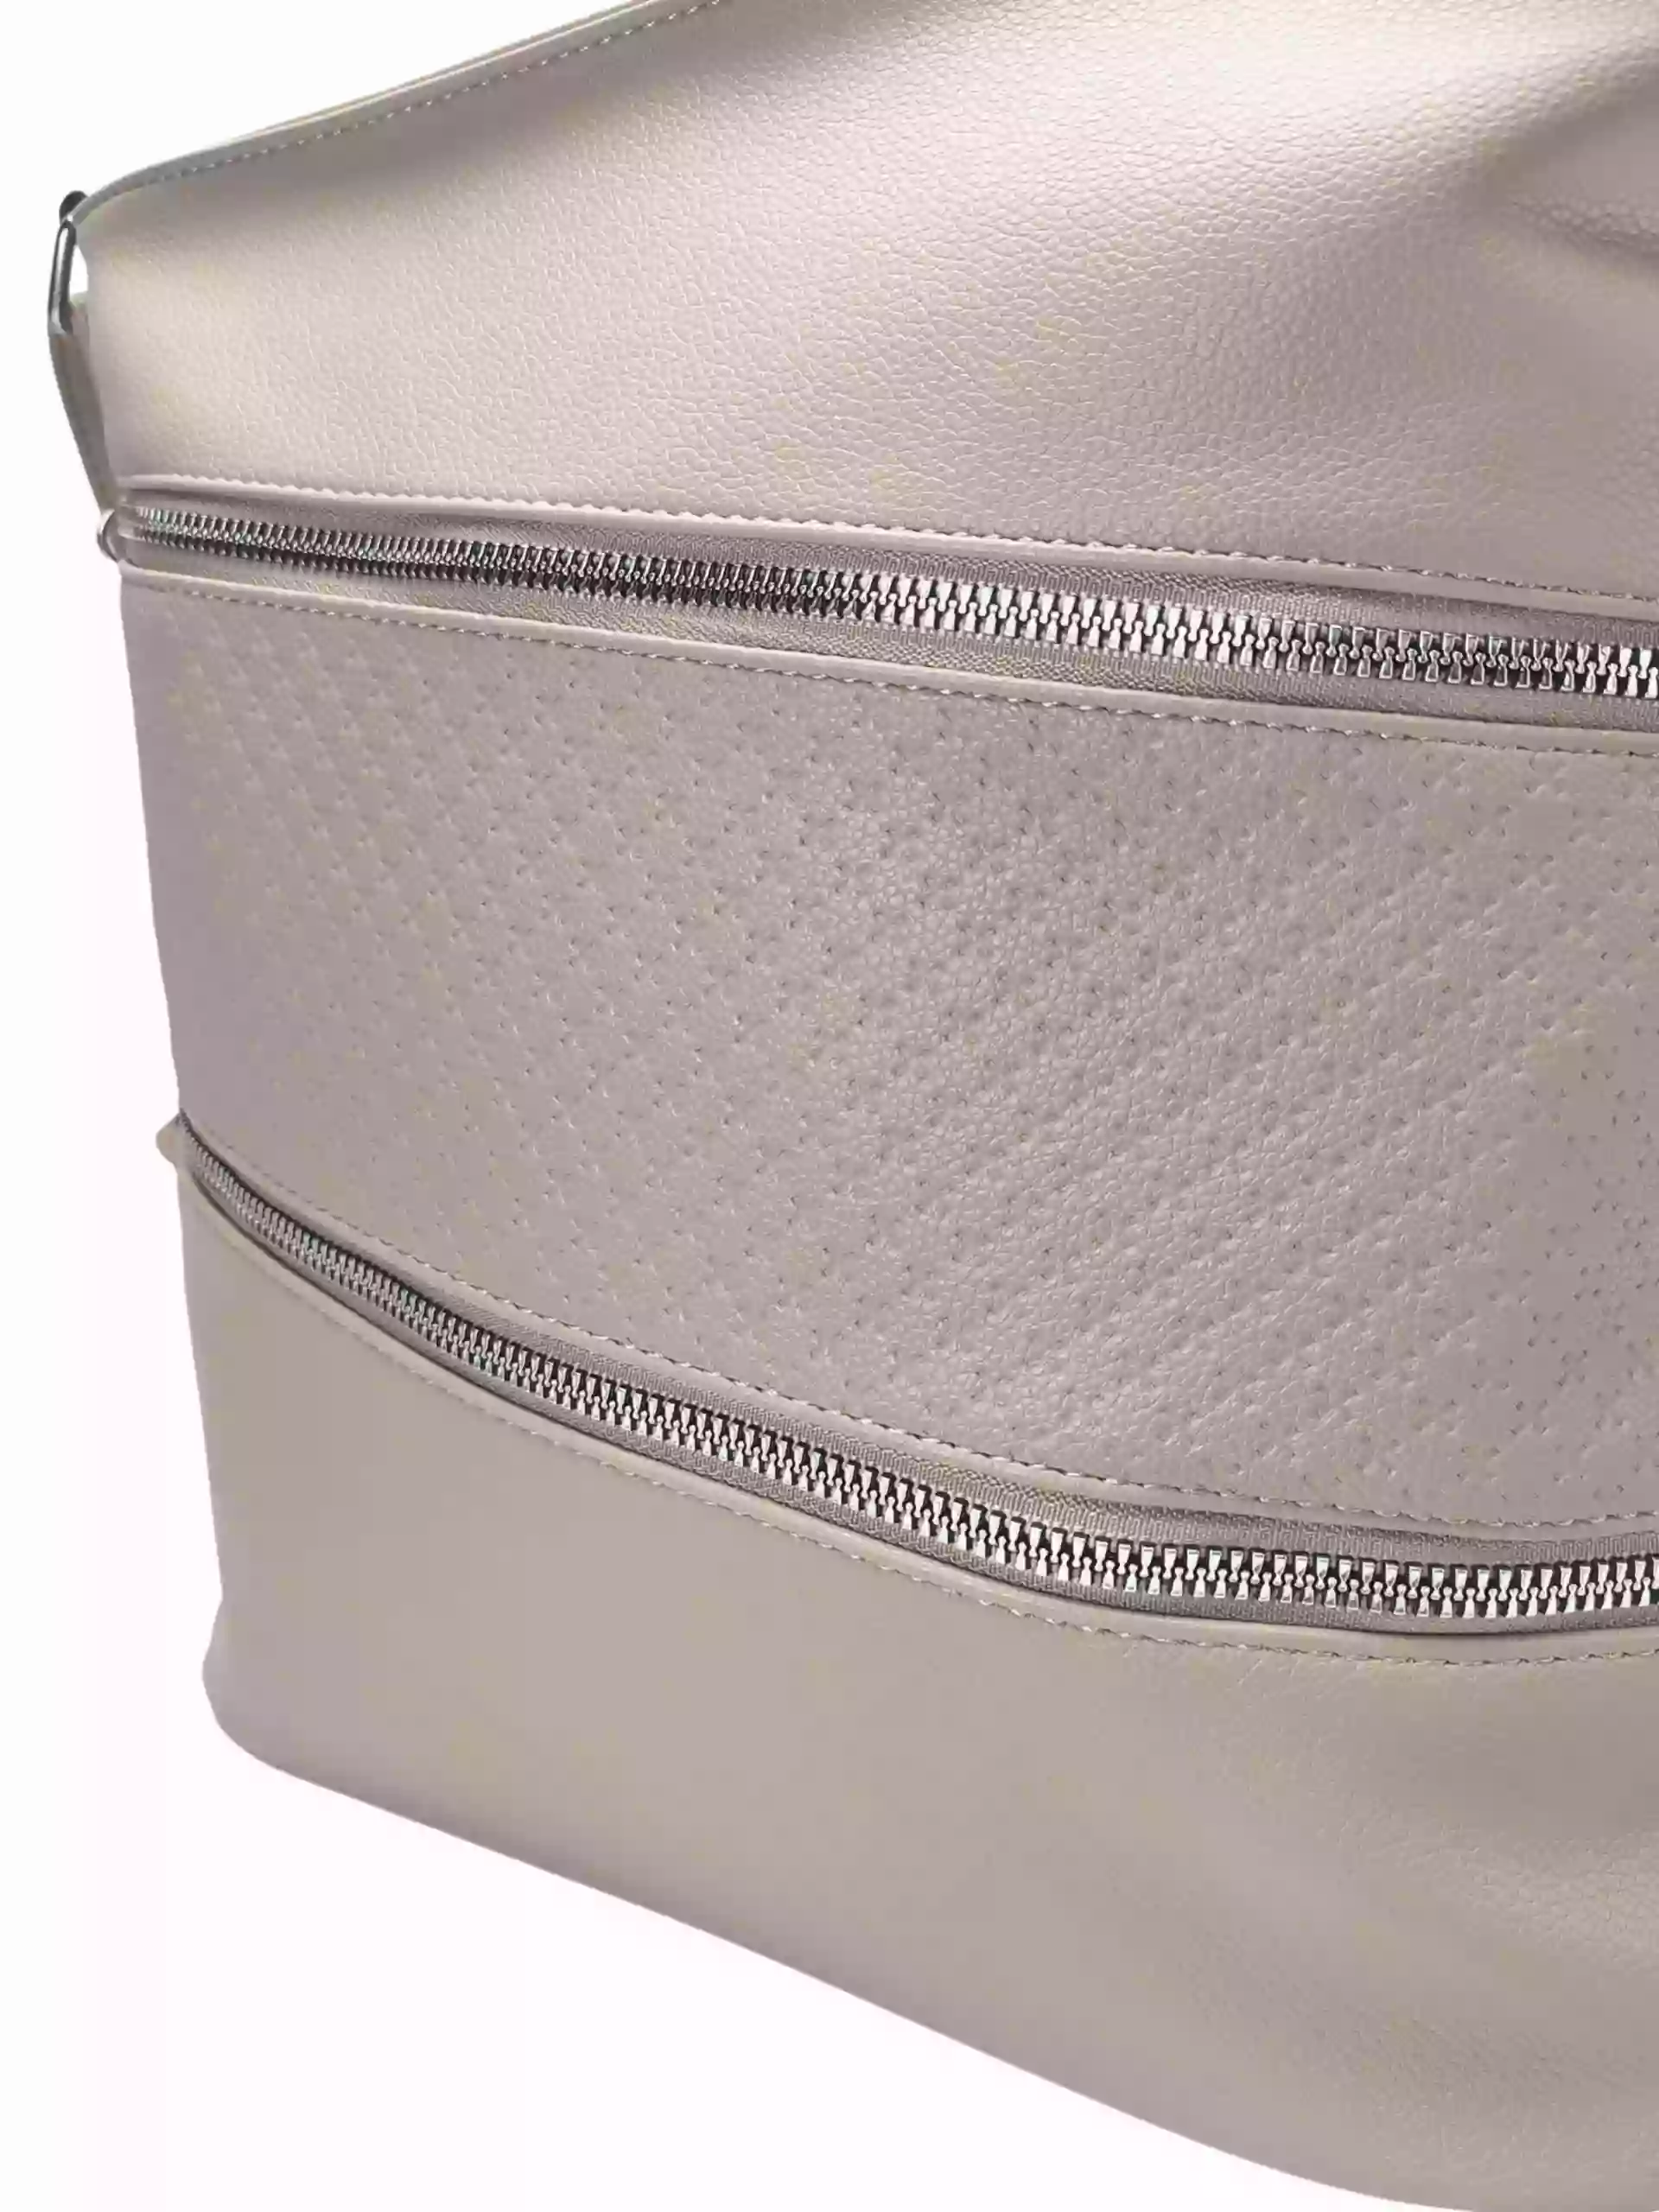 Béžová crossbody kabelka s šikmými kapsami, Tapple, H18007, detail crossbody kabelky